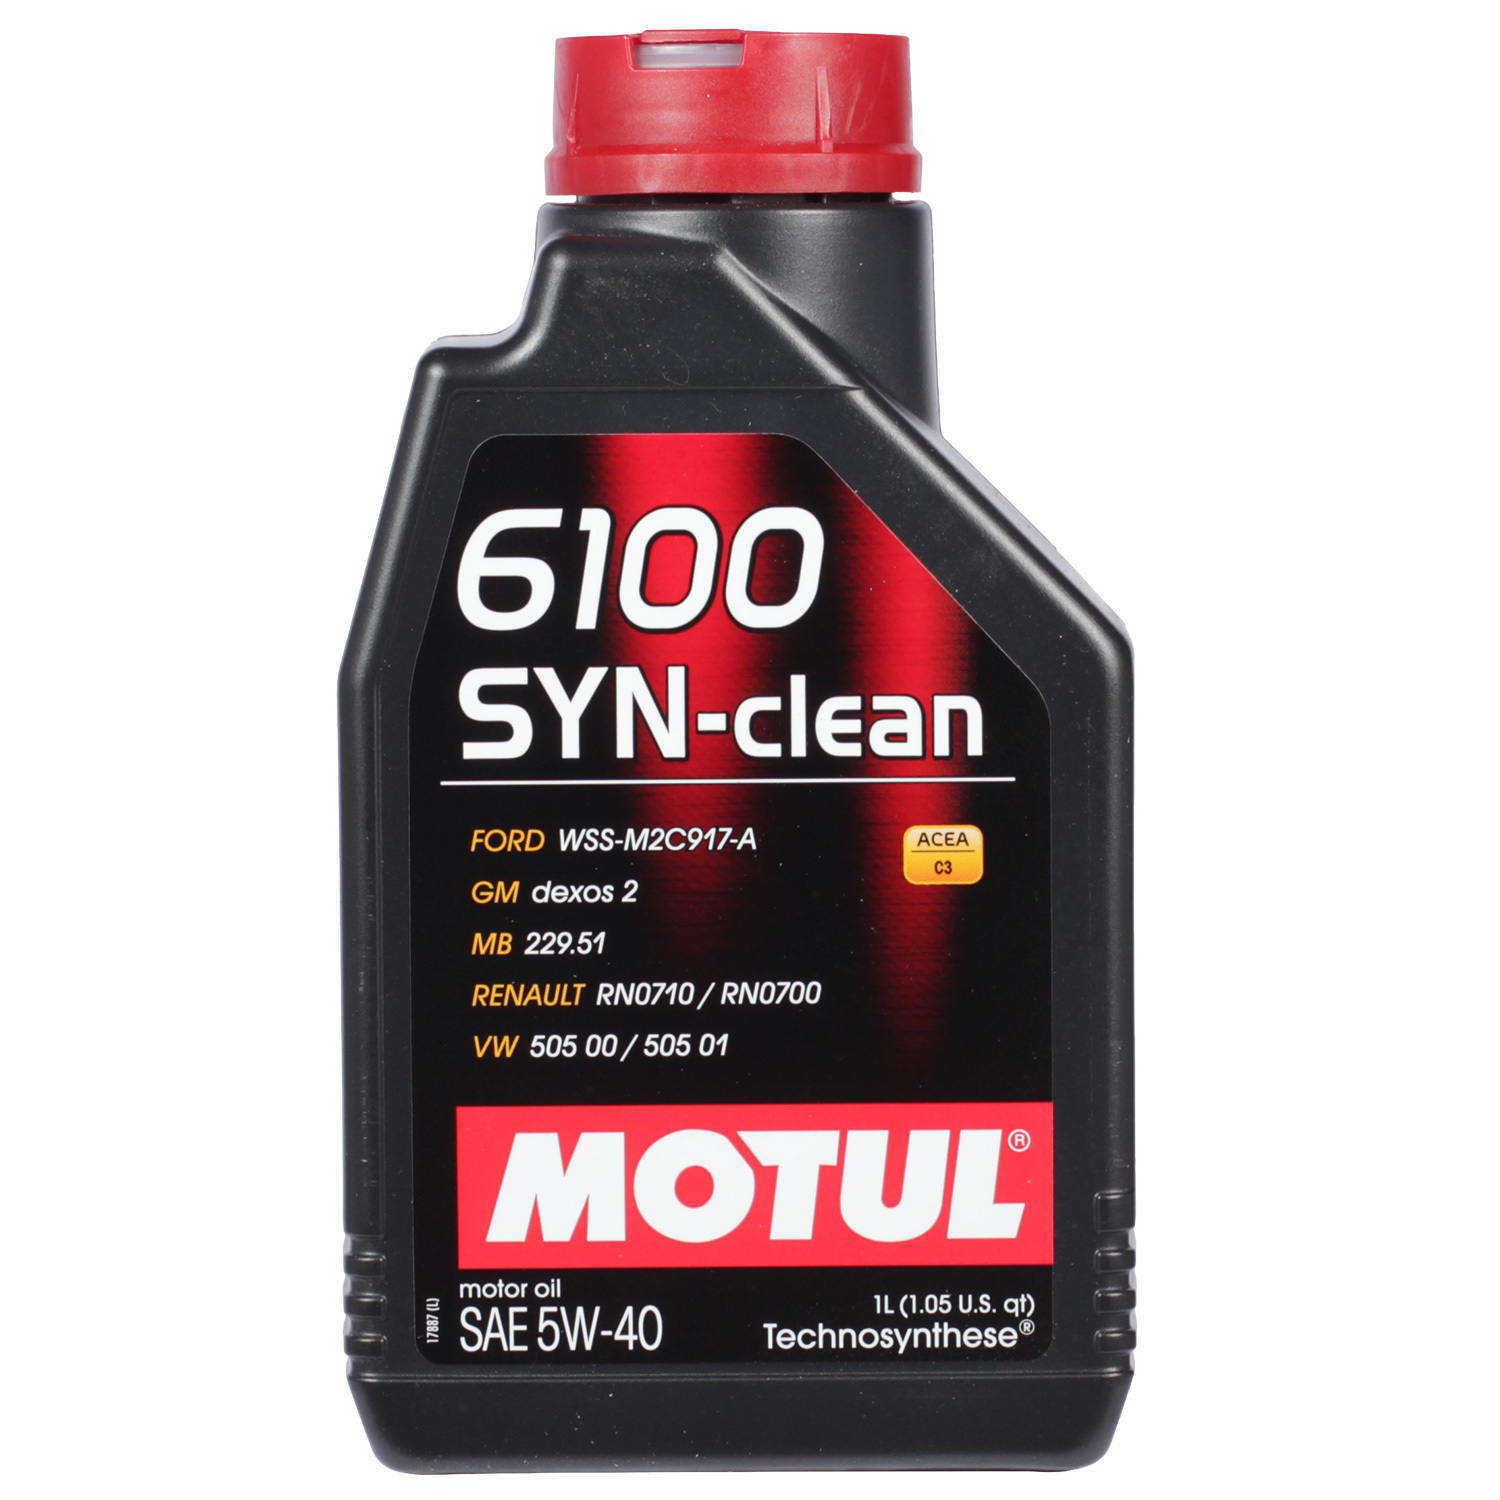 Motul Моторное масло Motul 6100 SYN-CLEAN 5W-40, 1 л motul моторное масло motul 8100 x clean 5w 30 1 л